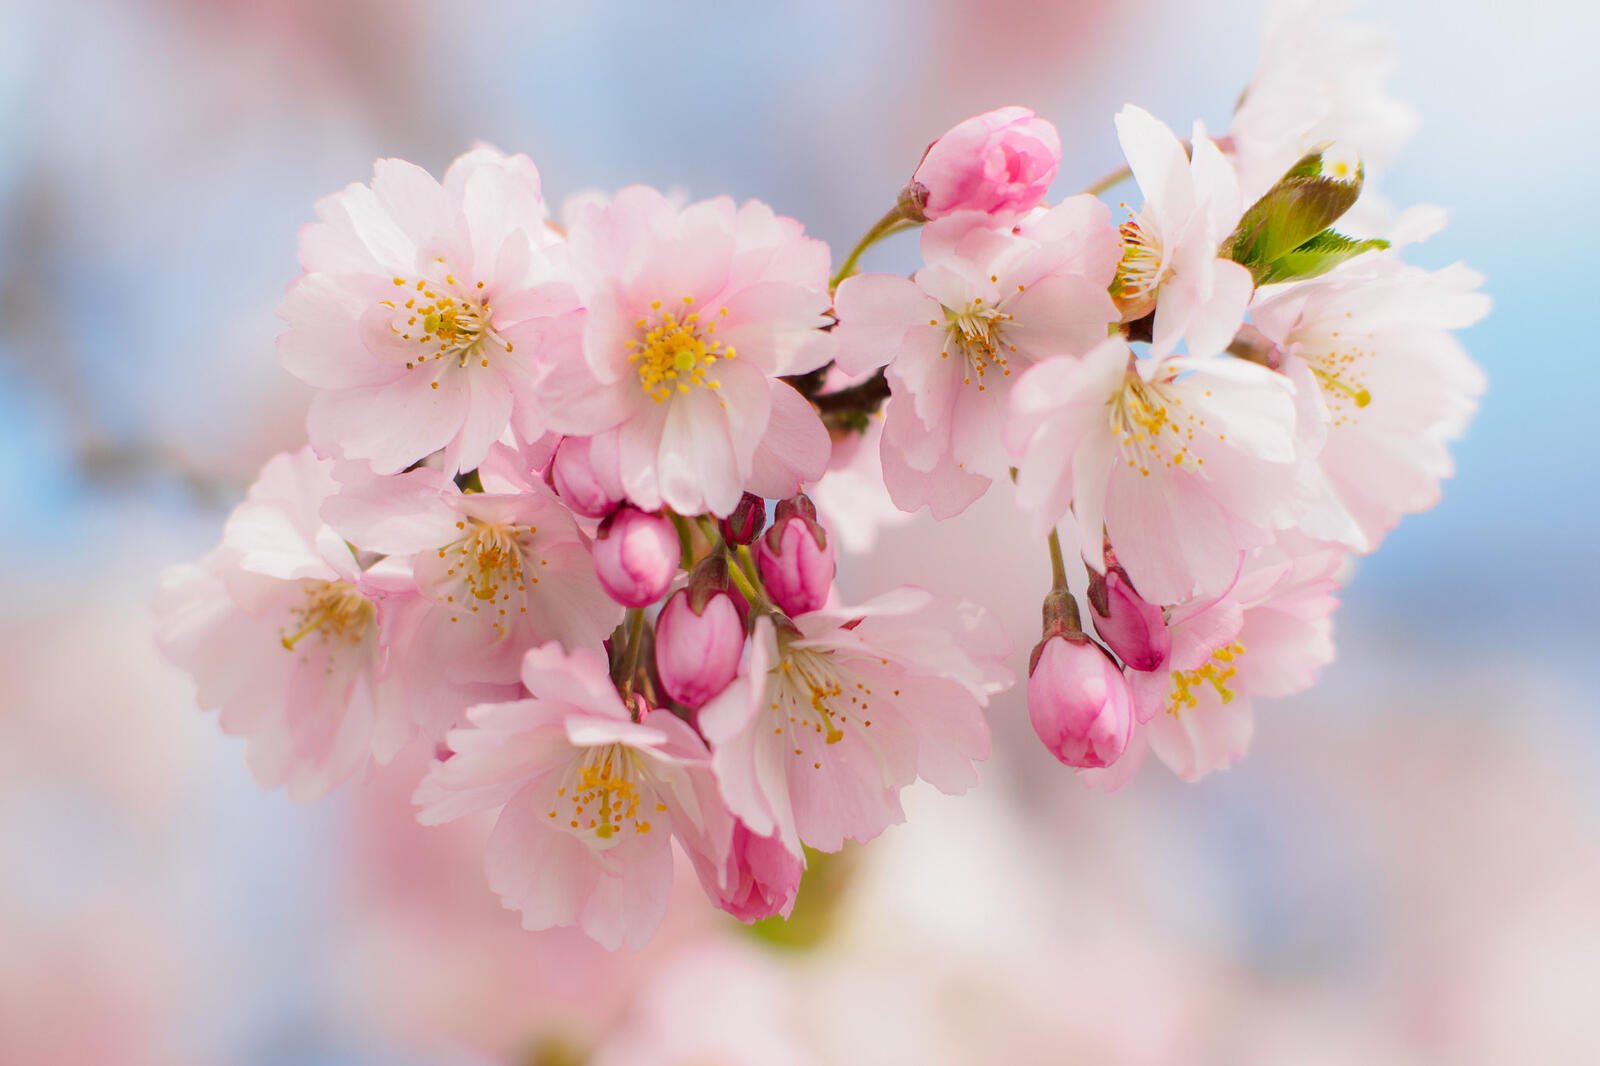 Обои cherry blossom вишневый цвет флора на рабочий стол